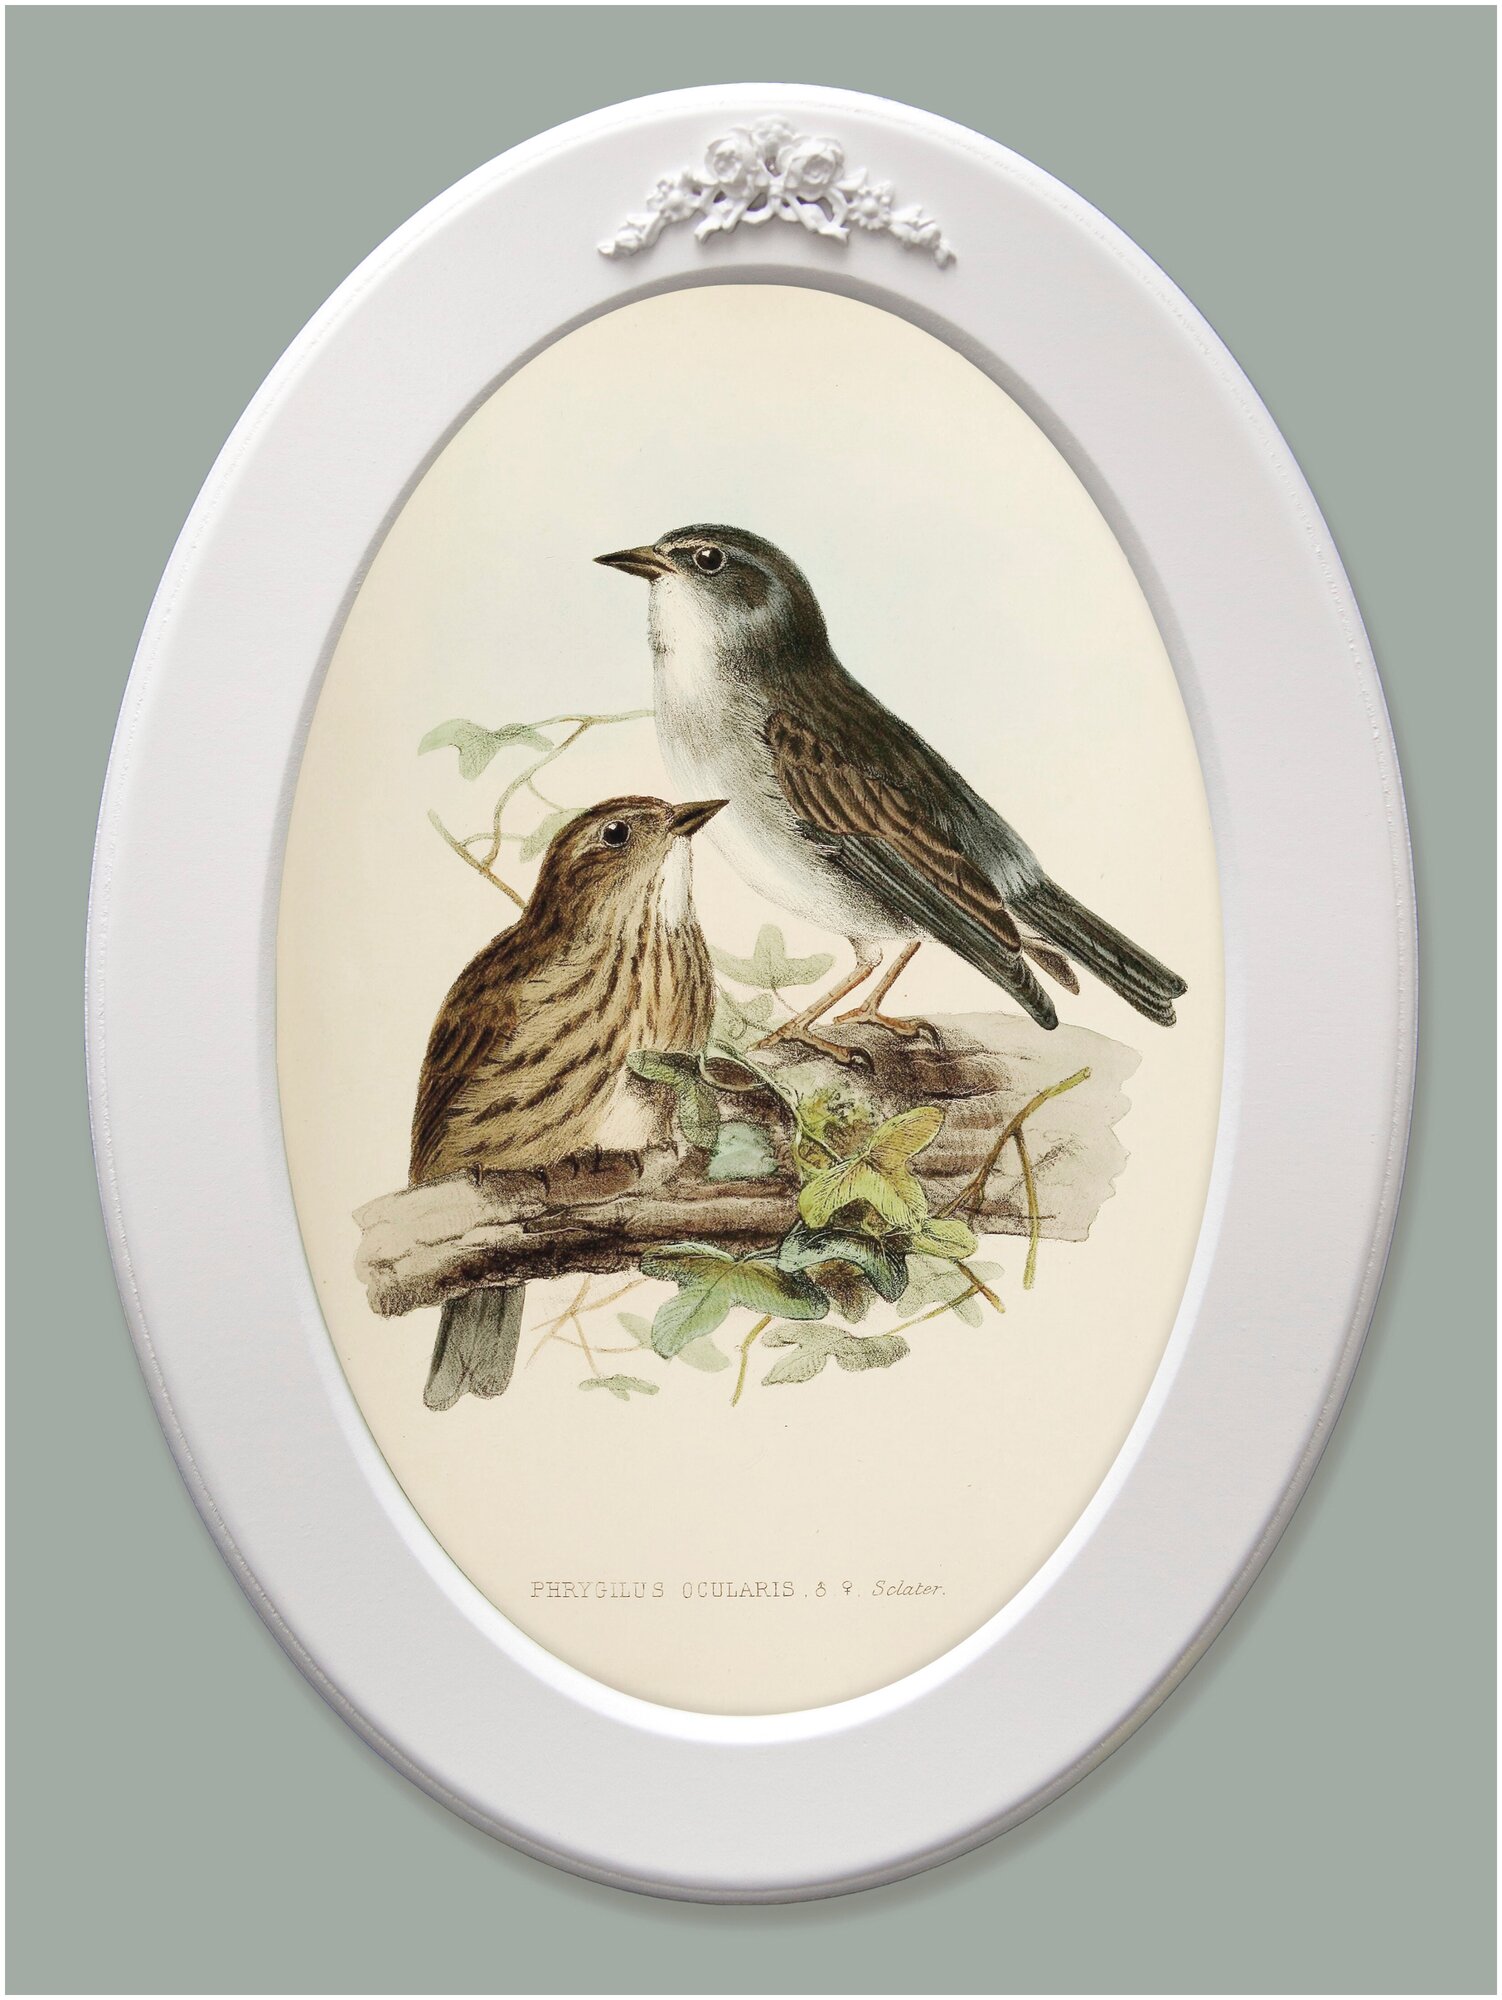 Картина в овальной деревянной раме с лепниной "Птички"